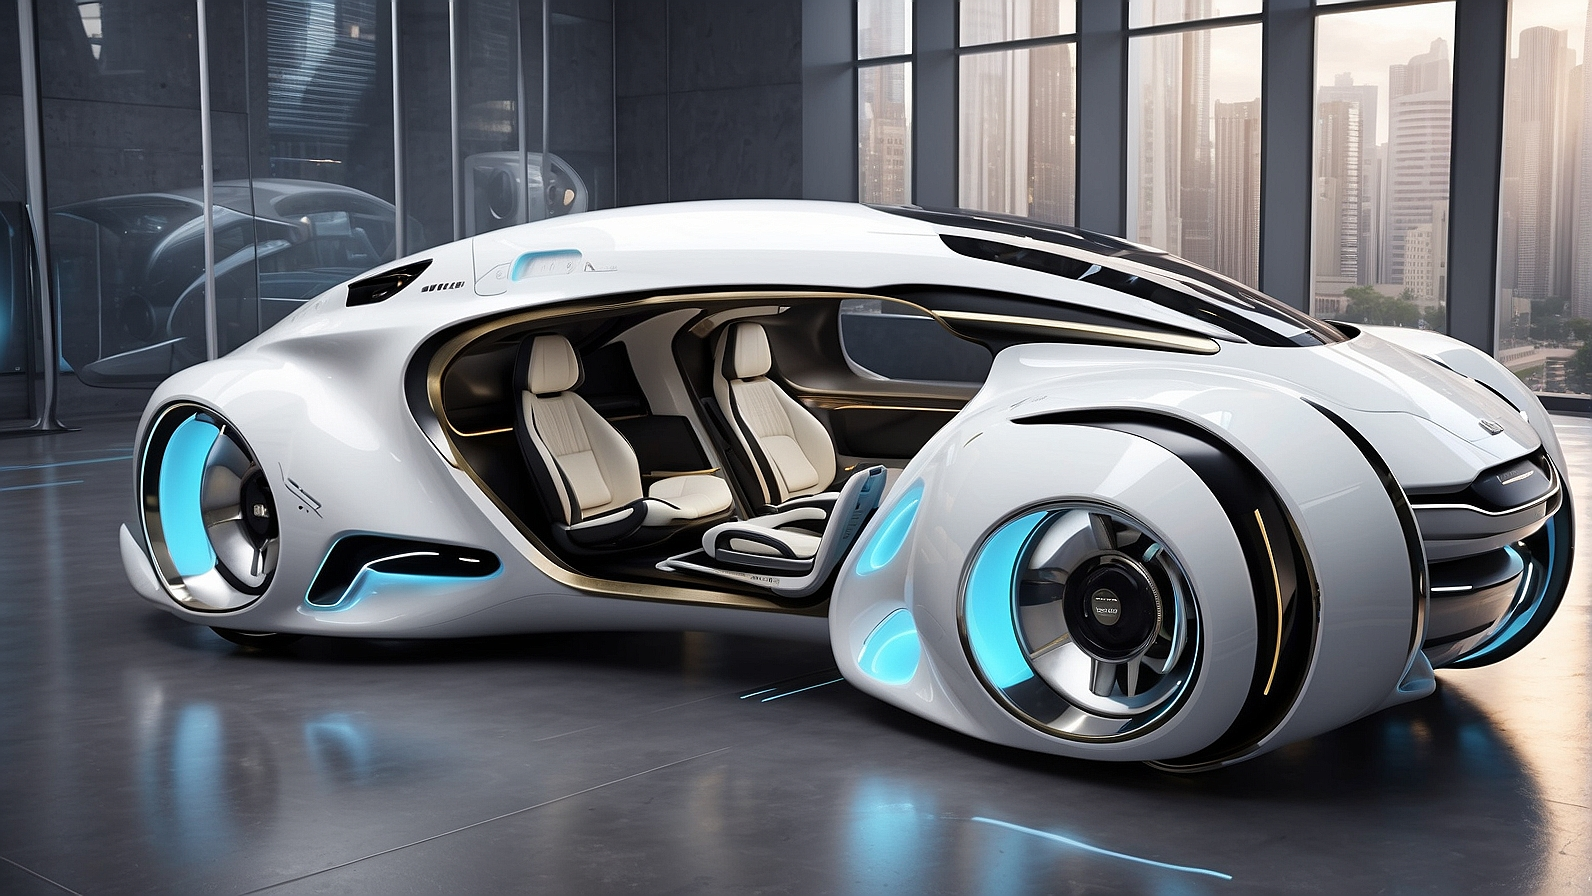 Как по мнению нейросети выглядит автомобиль в будущем 22-29 век | Пикабу